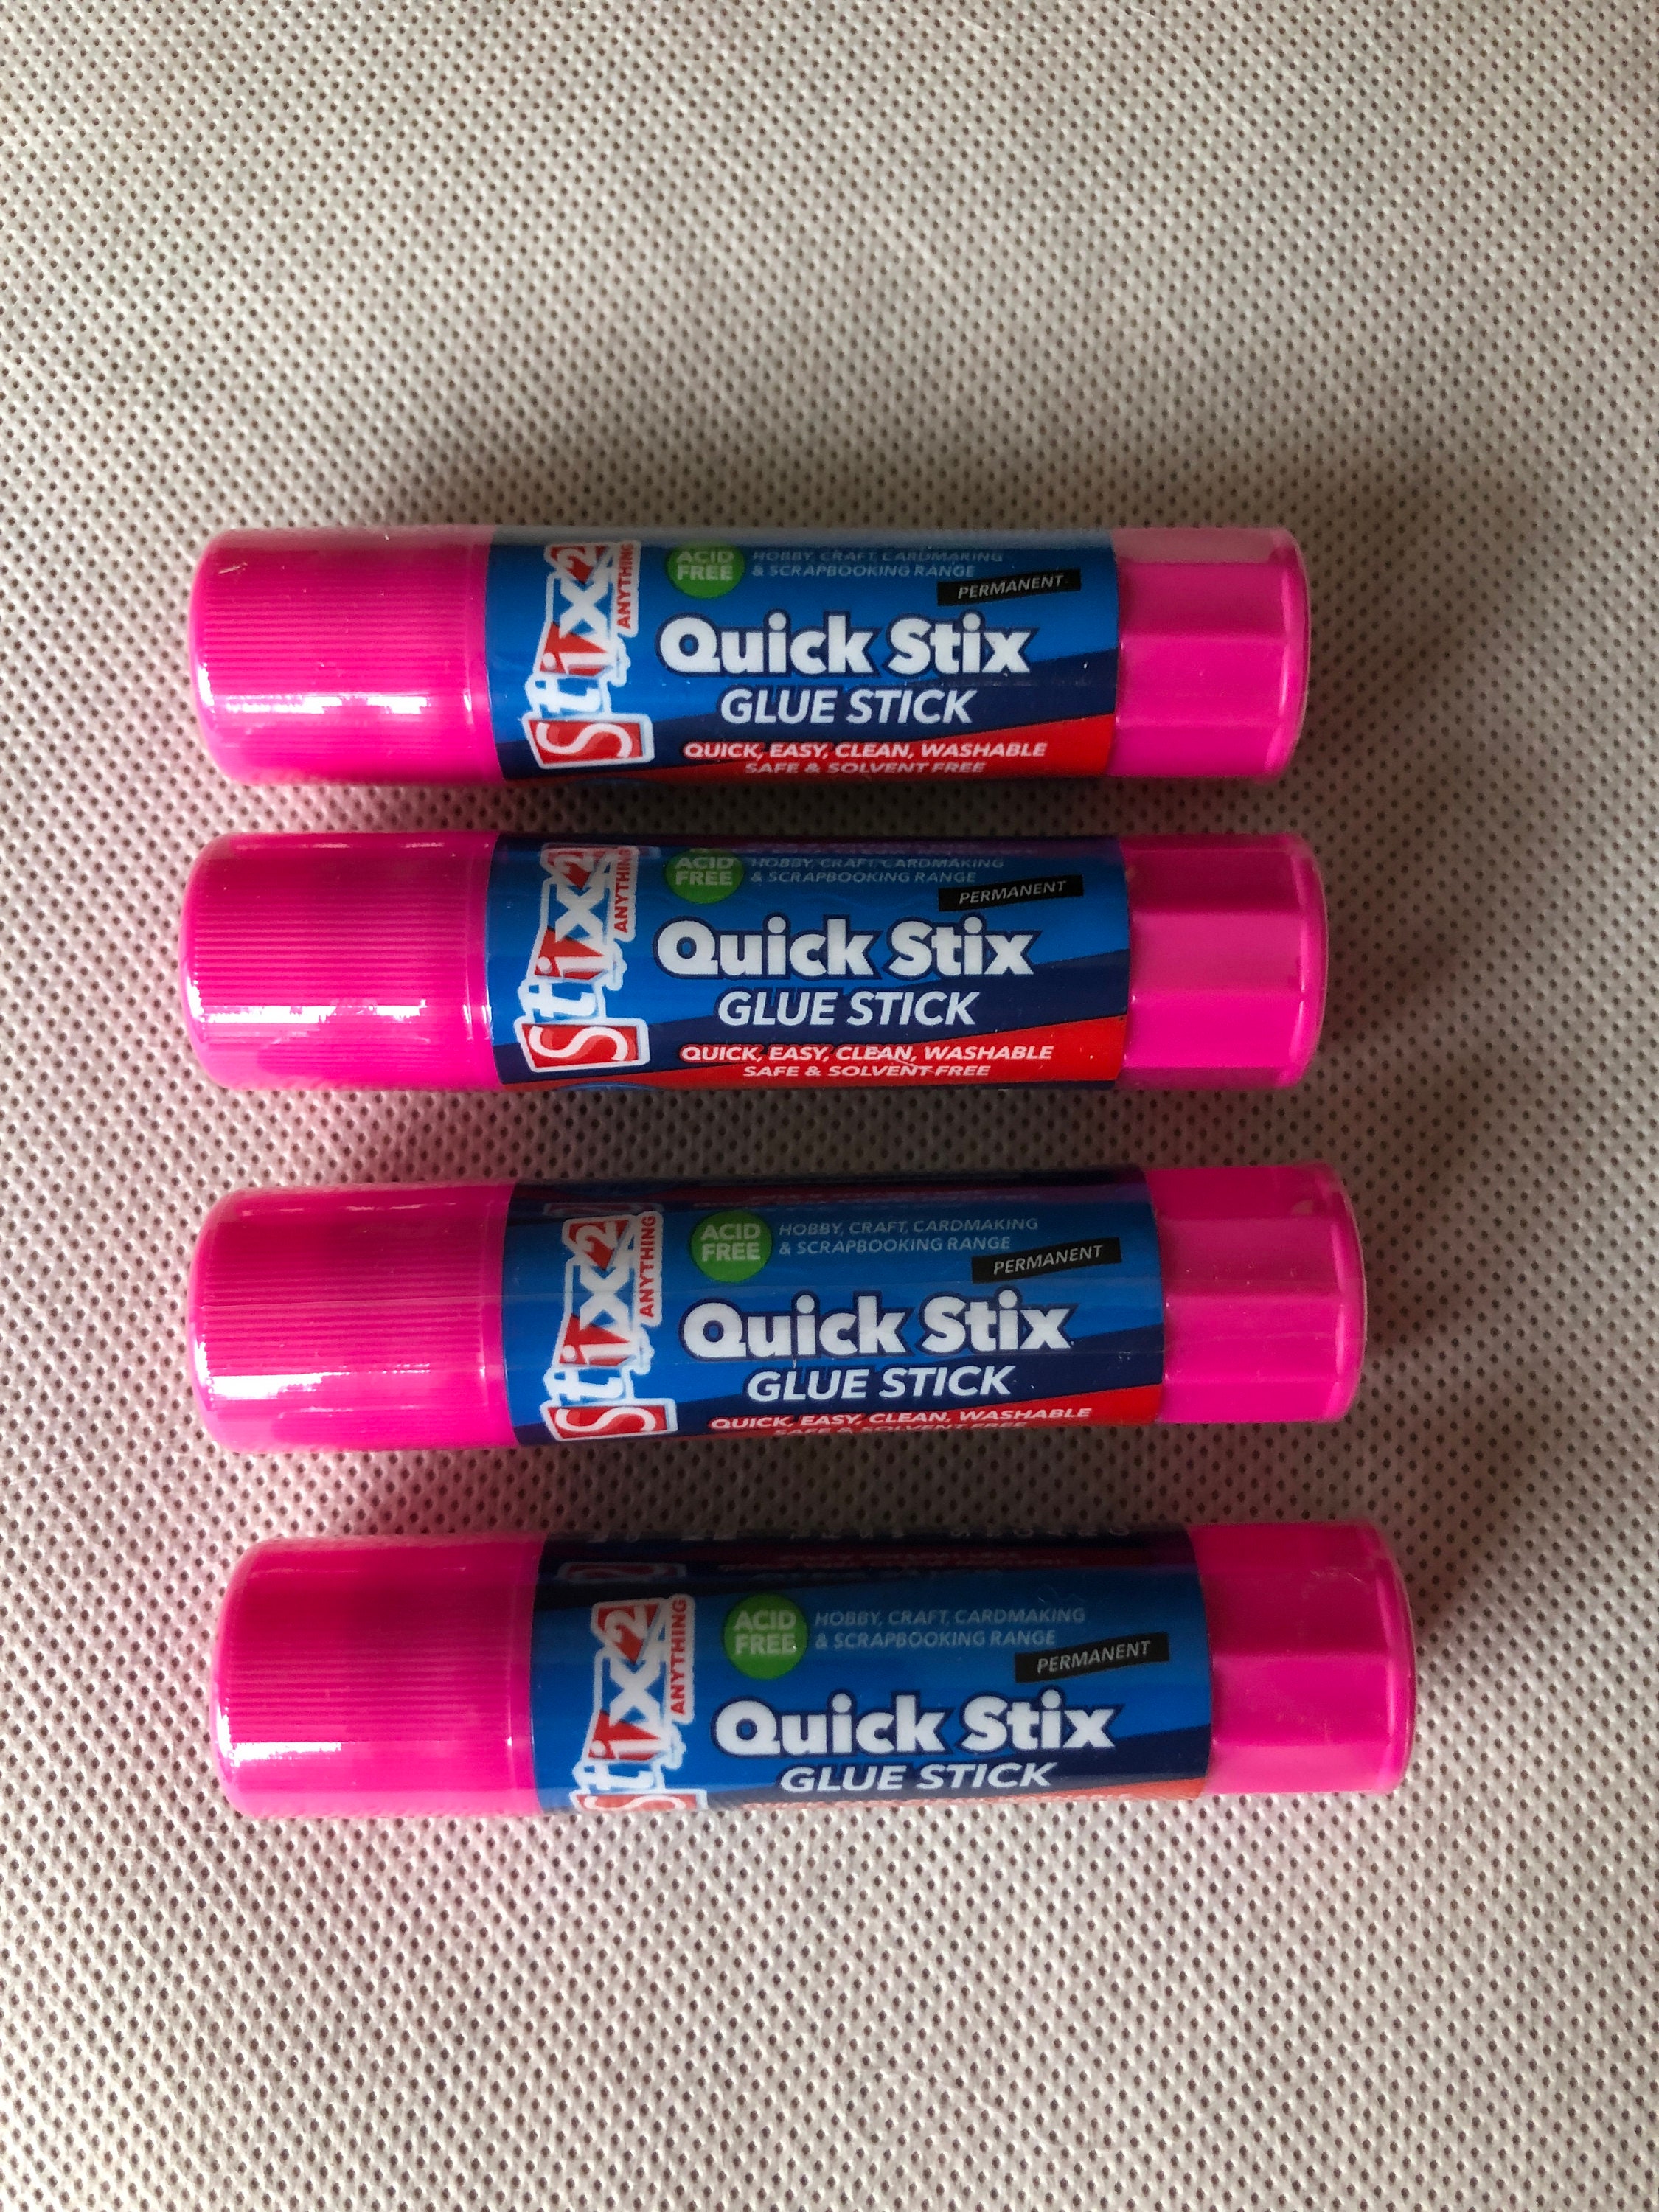 UHU Stic Magic Glue Stick Pack of 6 8.2g Solvent Free 3000688 